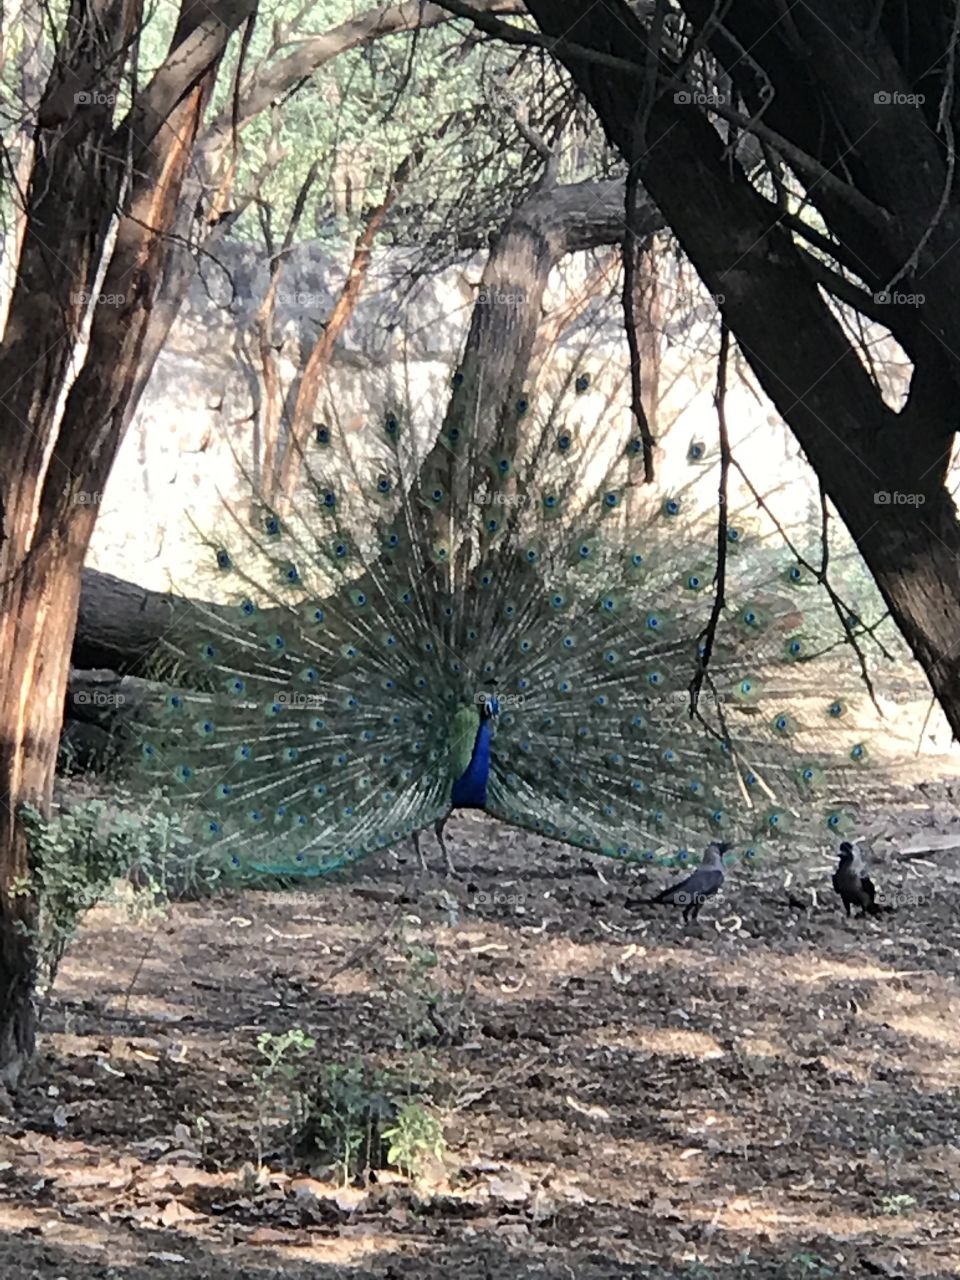 Wild peacock 